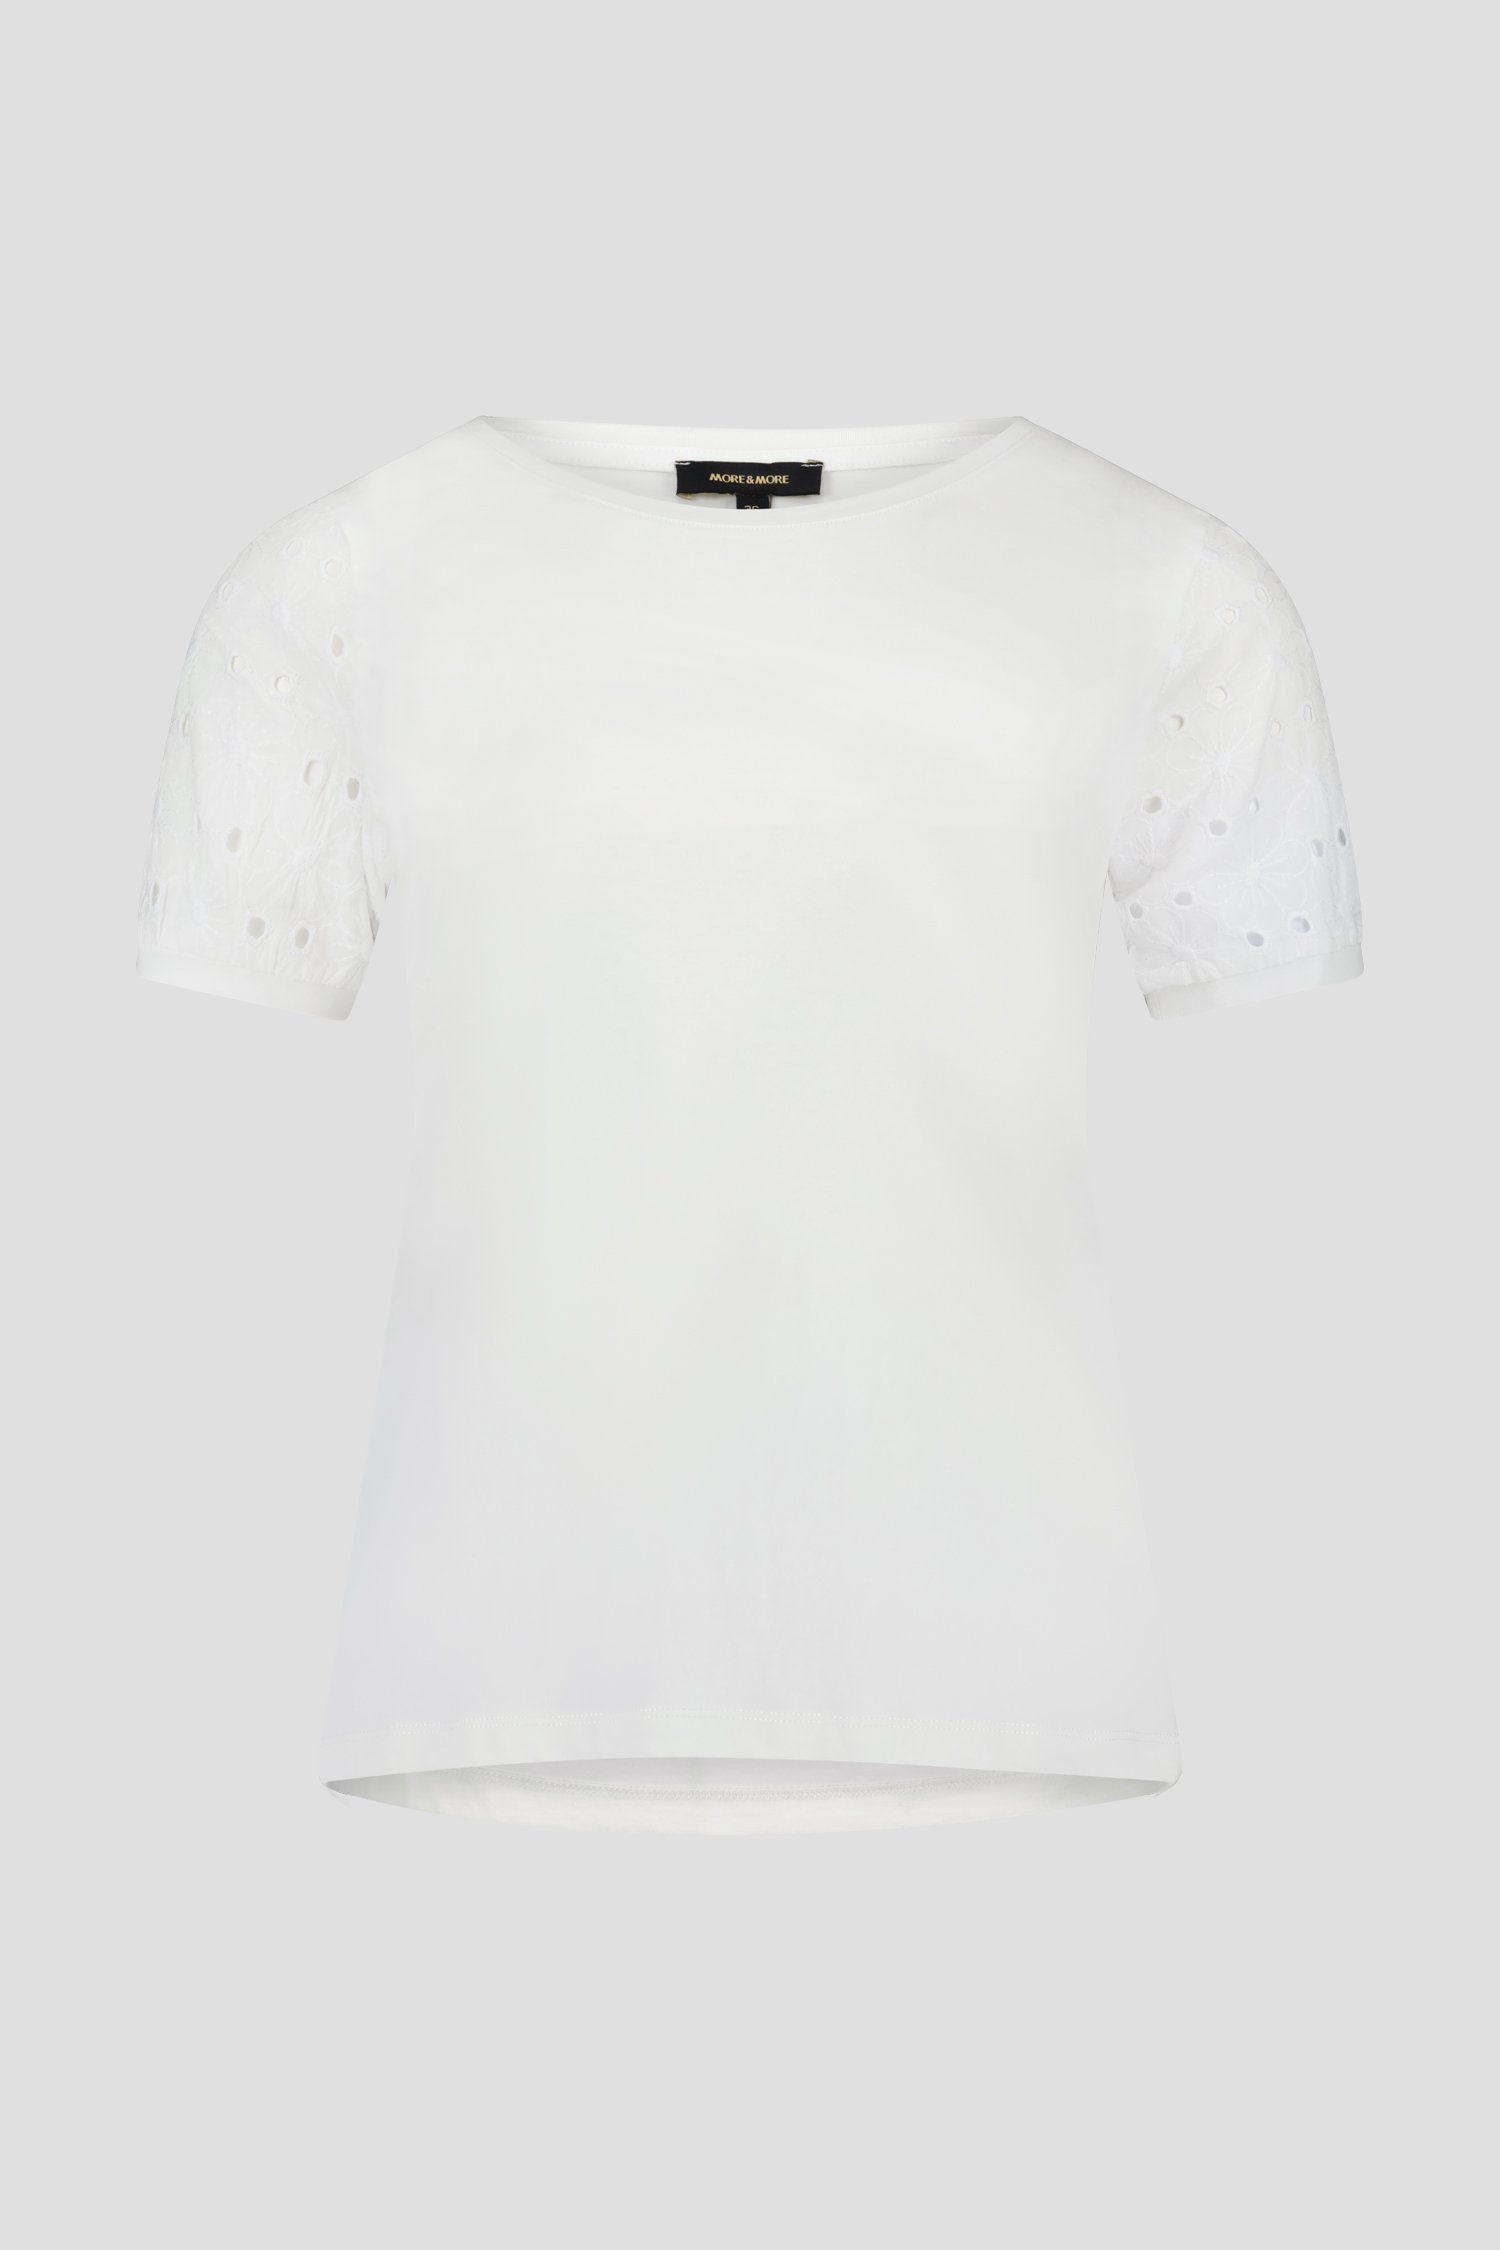 Wit T-shirt met gebloemde mouwtjes van More & More voor Dames